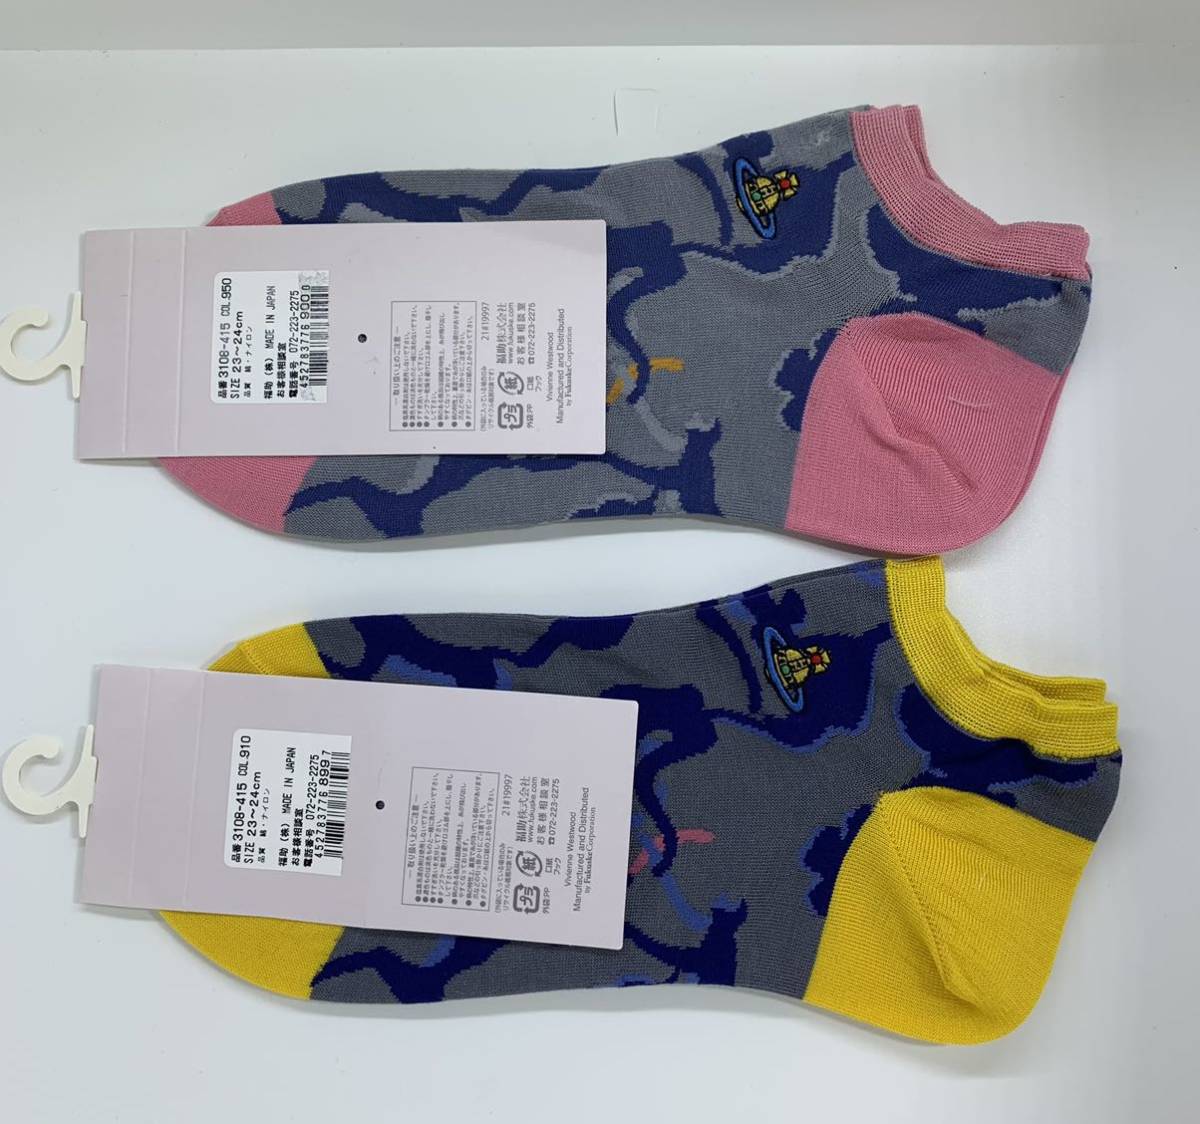 vivienne westwood Vivienne Westwood женский носки камуфляж -juo-b2 позиций комплект новый товар не использовался товар 